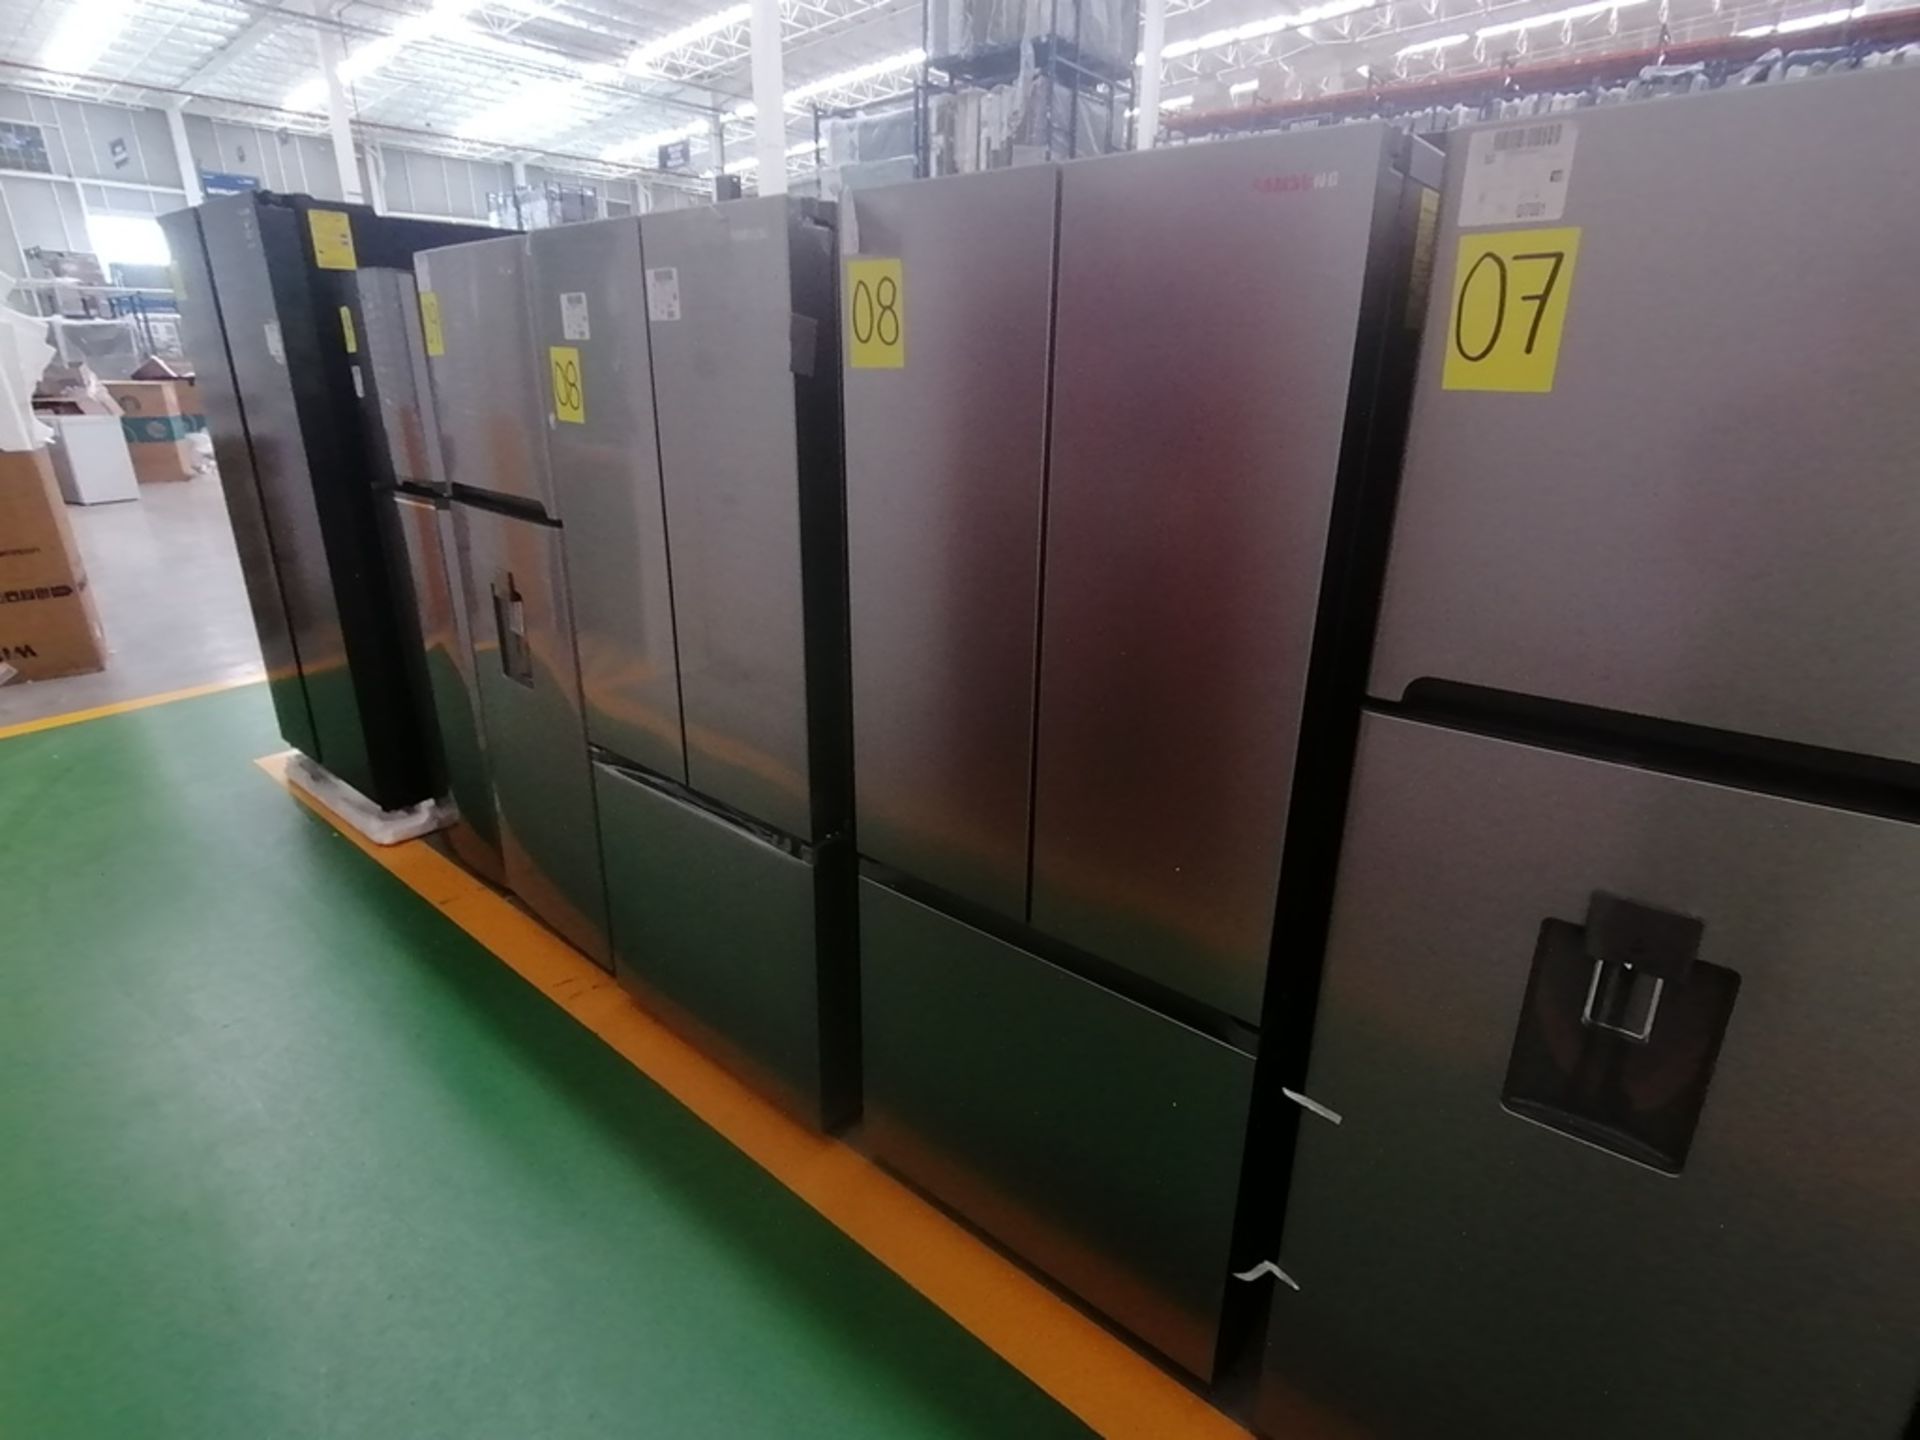 Lote de 2 refrigeradores incluye: 1 Refrigerador, Marca Samsung, Modelo RT22A401059, Serie 0BA84BBR